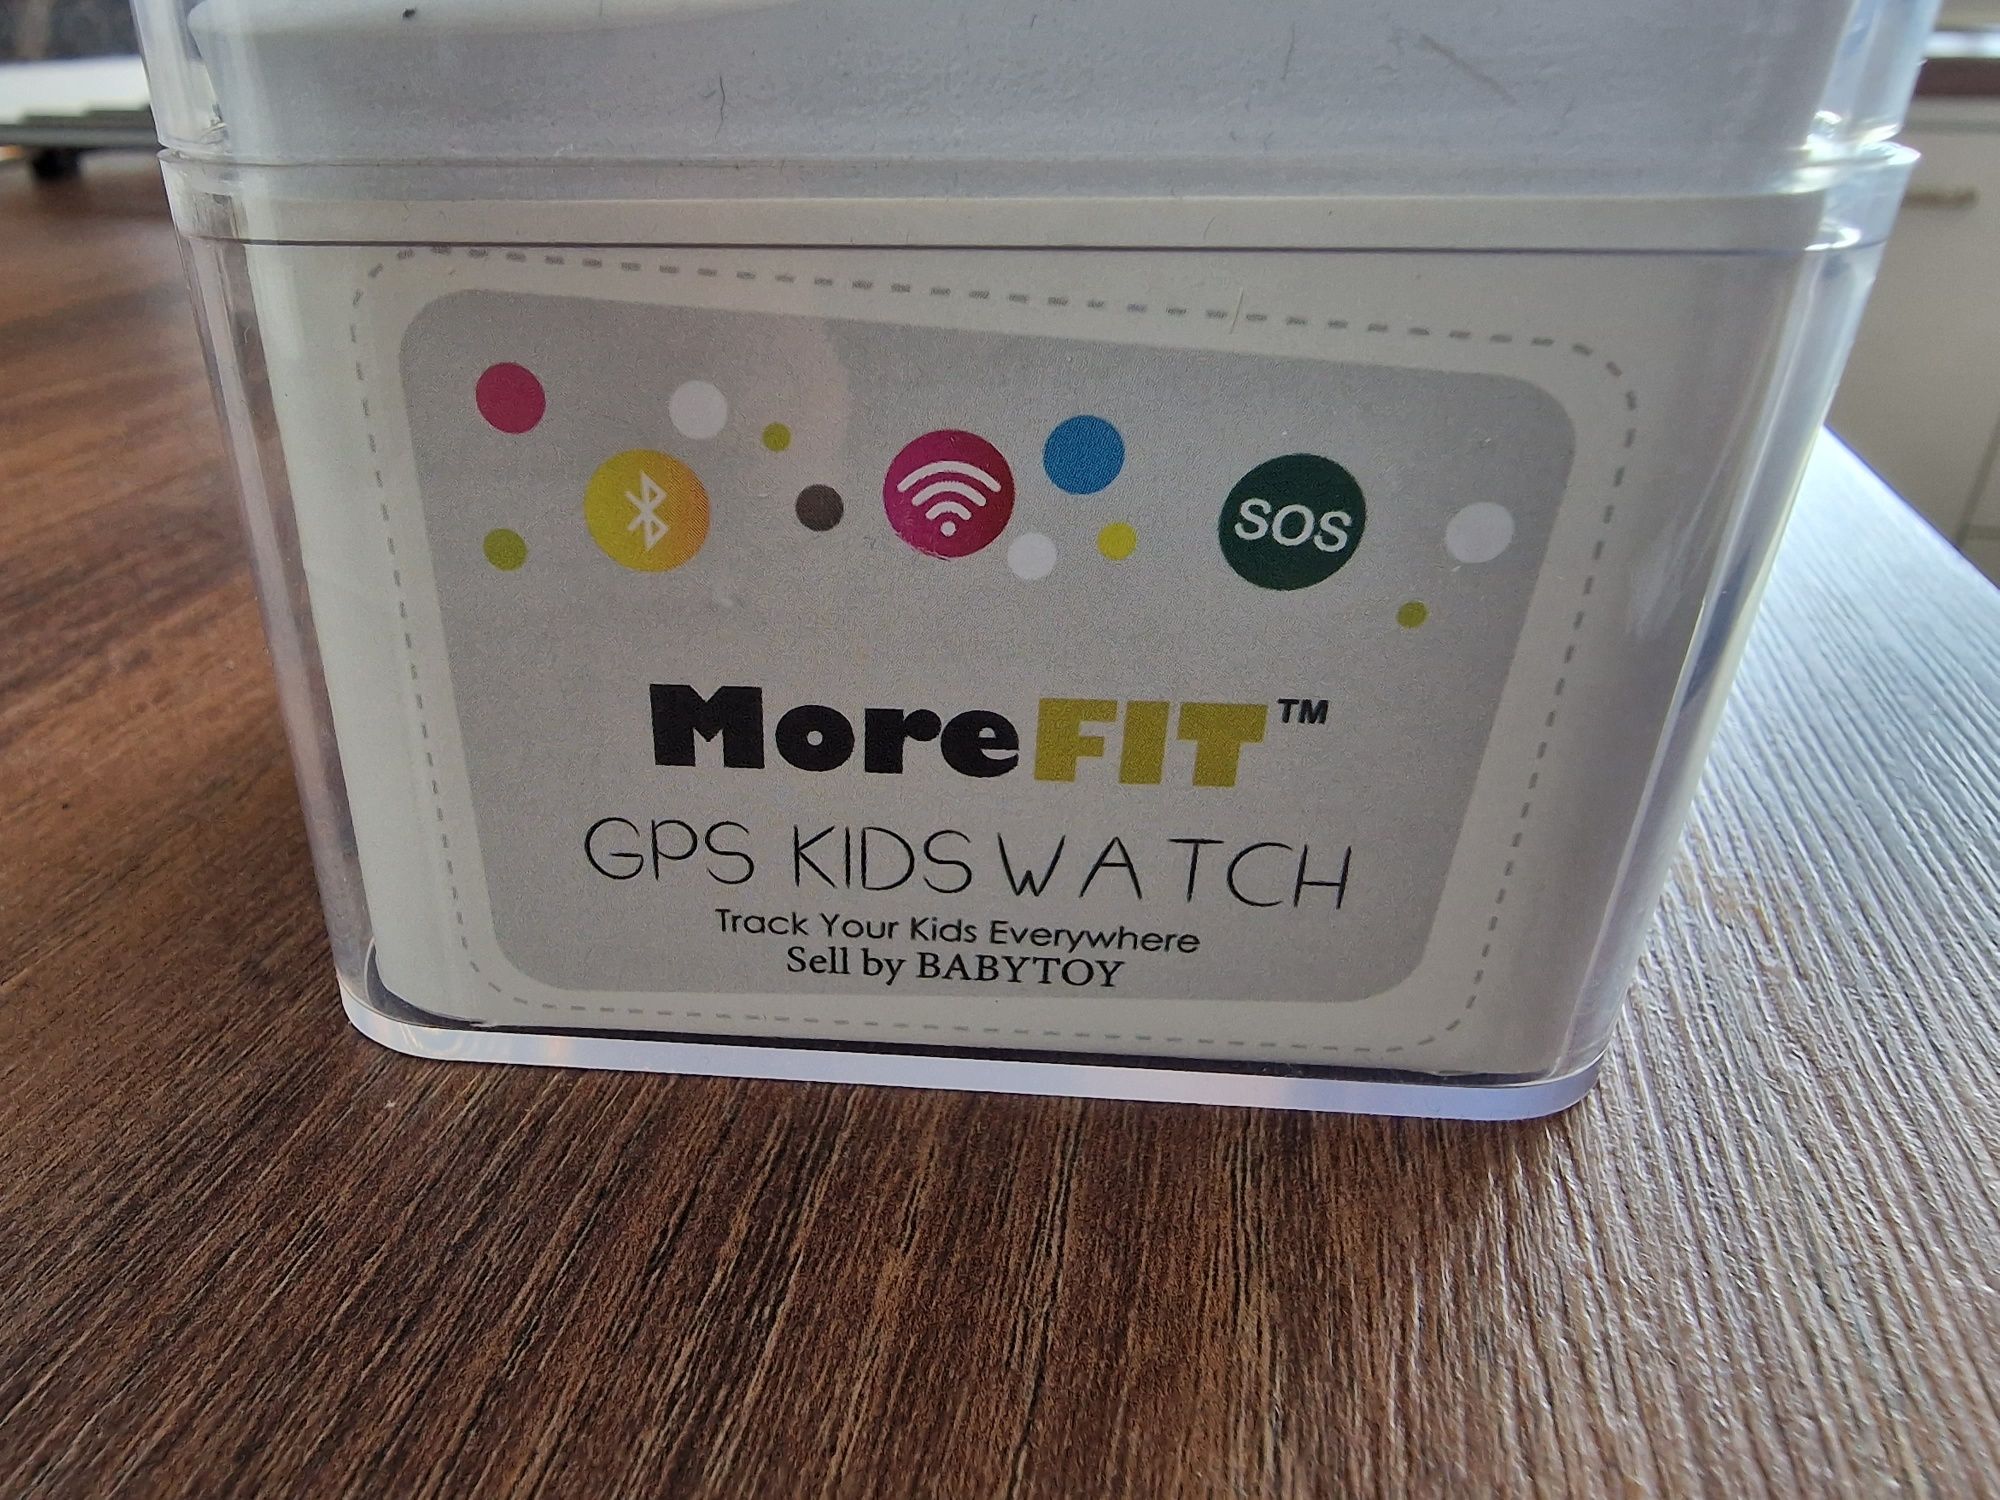 Smartwatch MoreFIT GW1000s